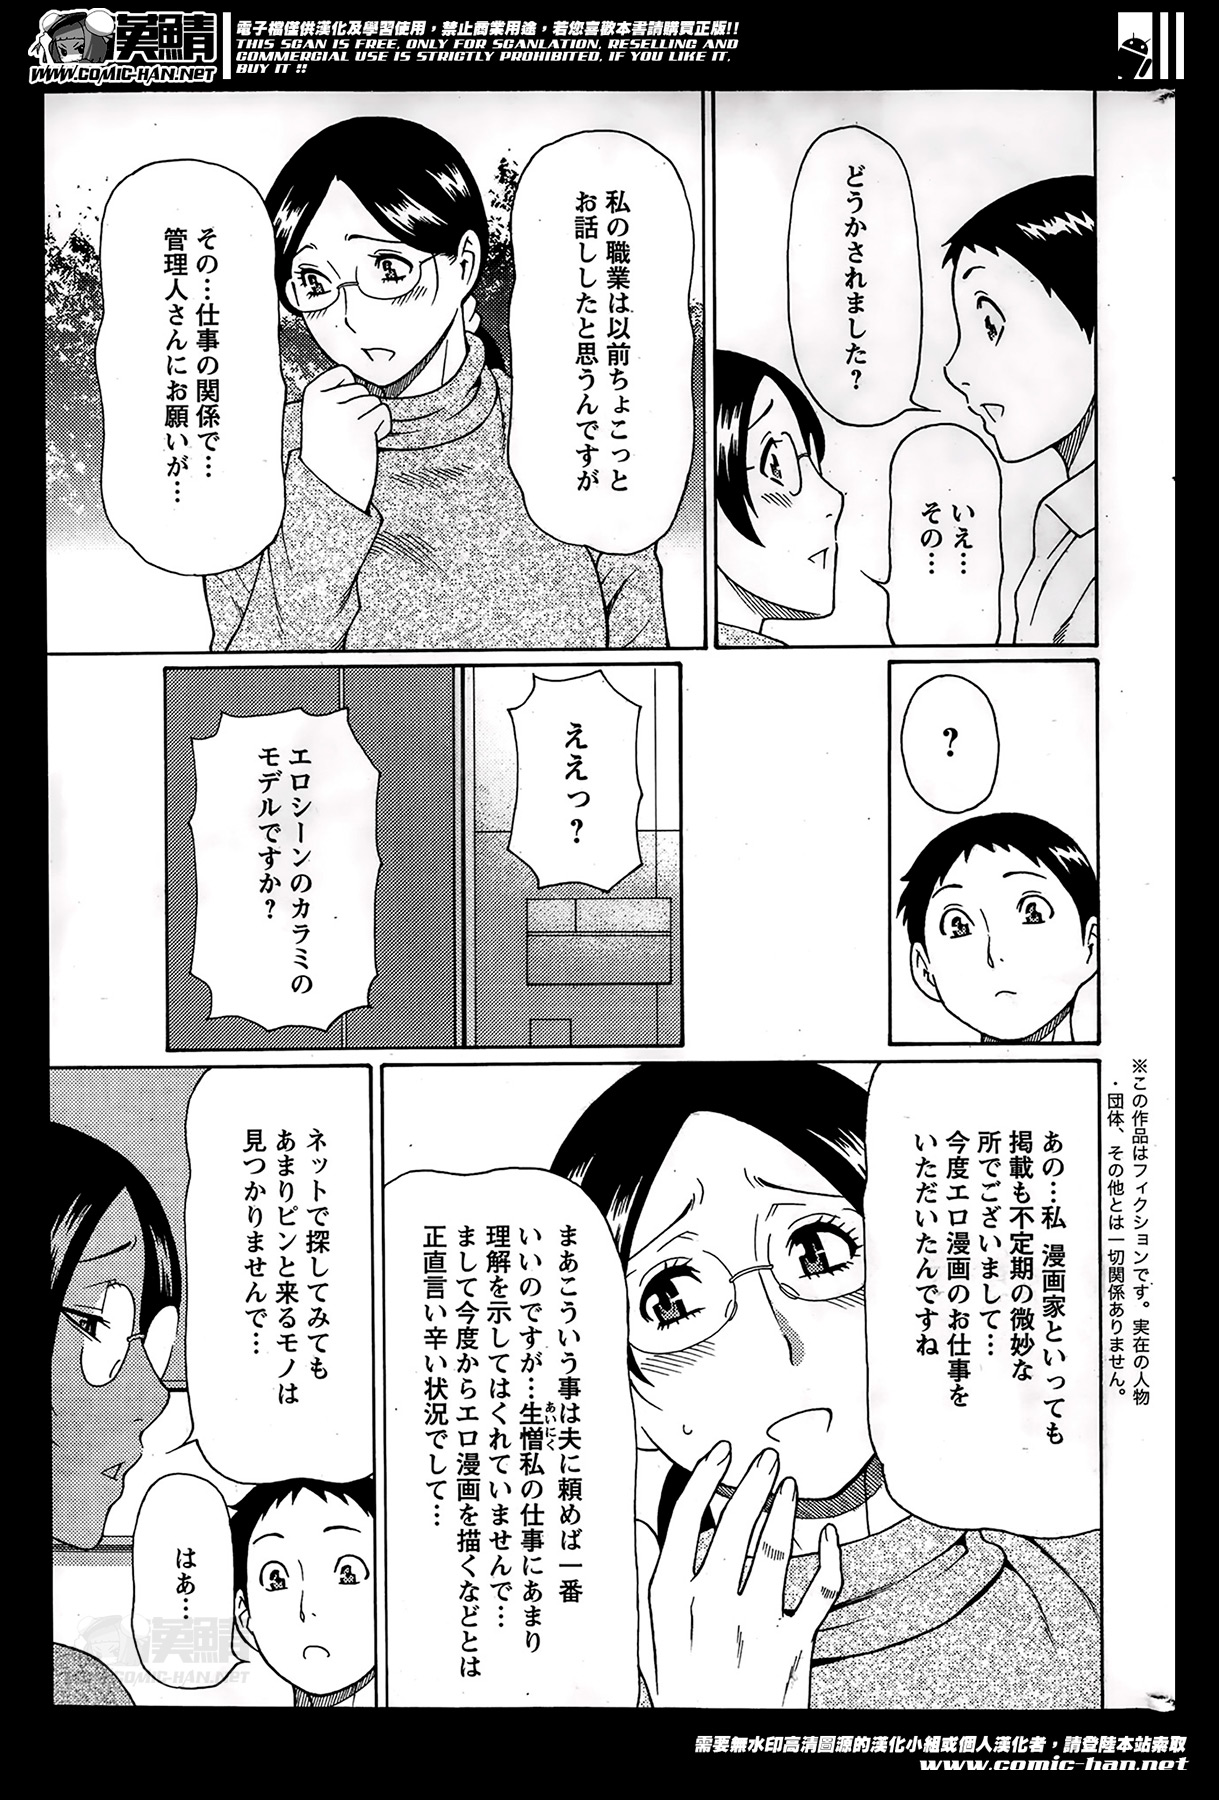 [Takasugi Kou] Madam Palace Ch.1-4 page 23 full